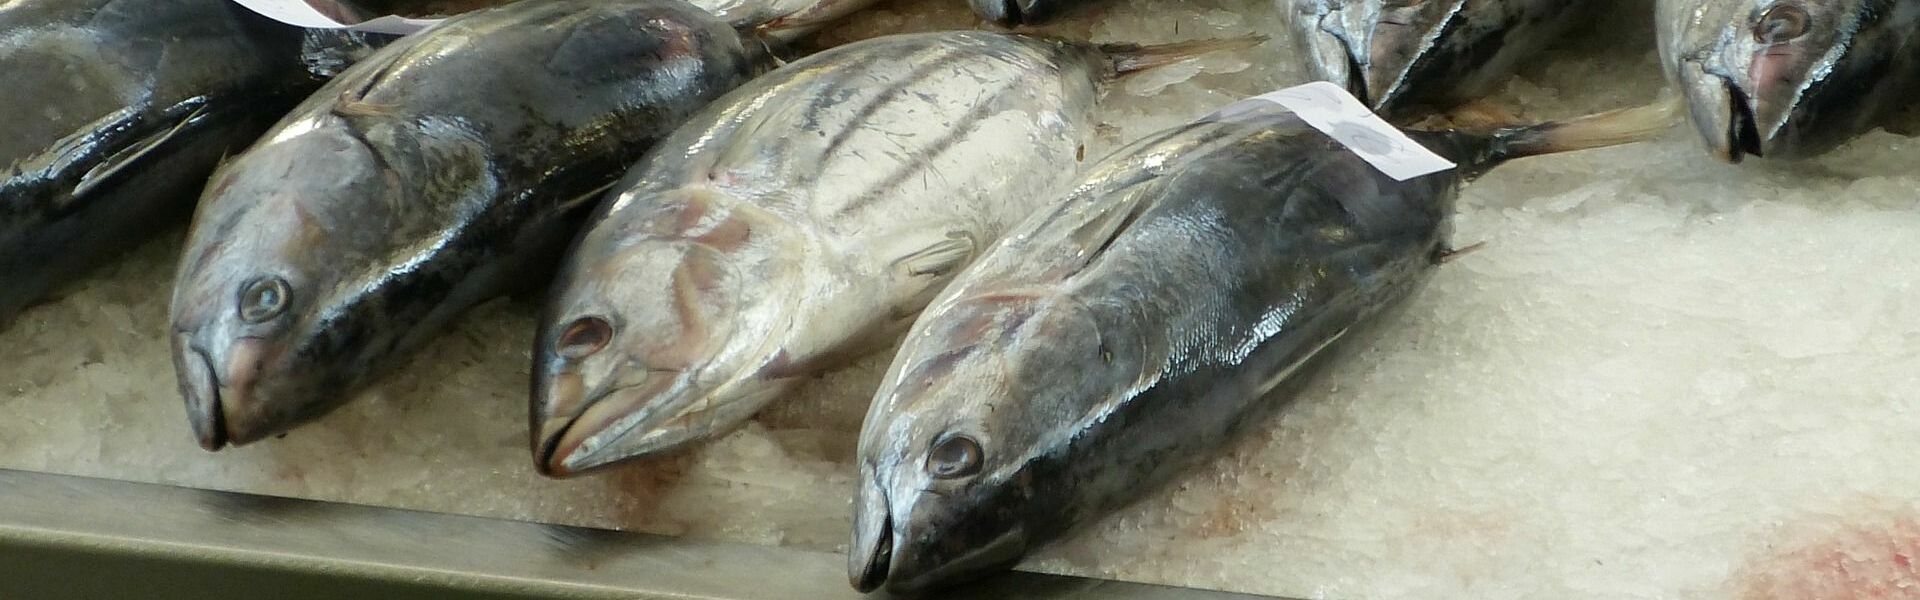 Un estudio en el que participa un profesor de la UMU demuestra que los españoles son los europeos que más mercurio tienen en su organismo por el consumo de pescado